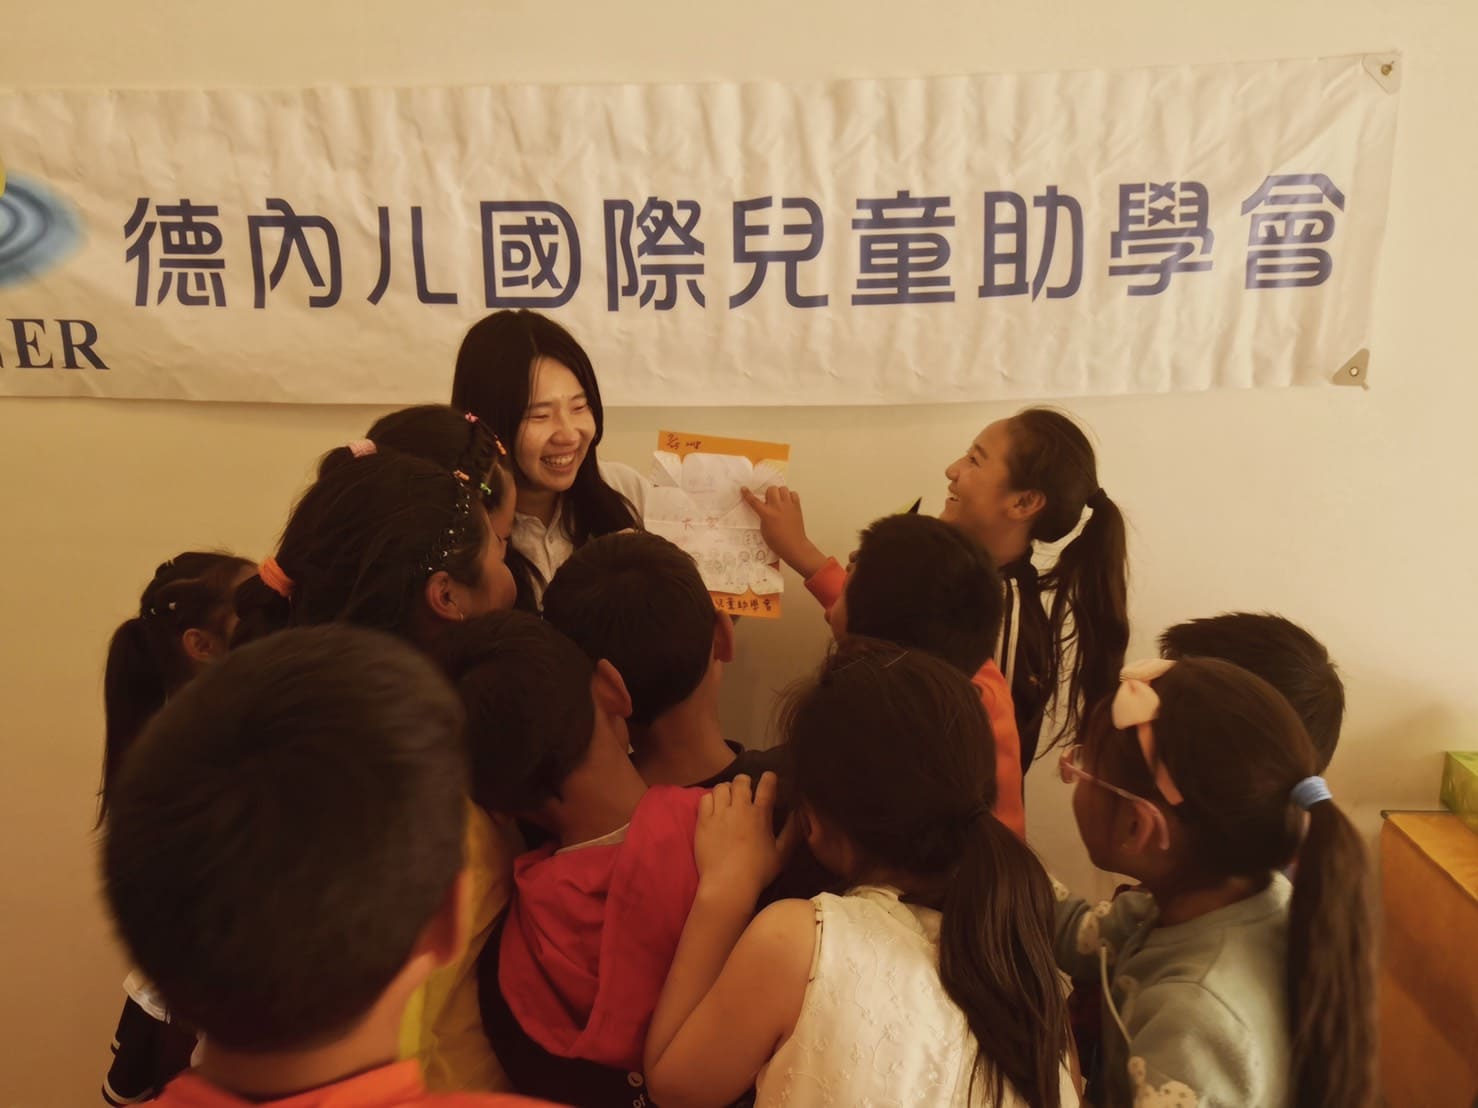 The most memorable volunteer service – Ganzi, Sichuan